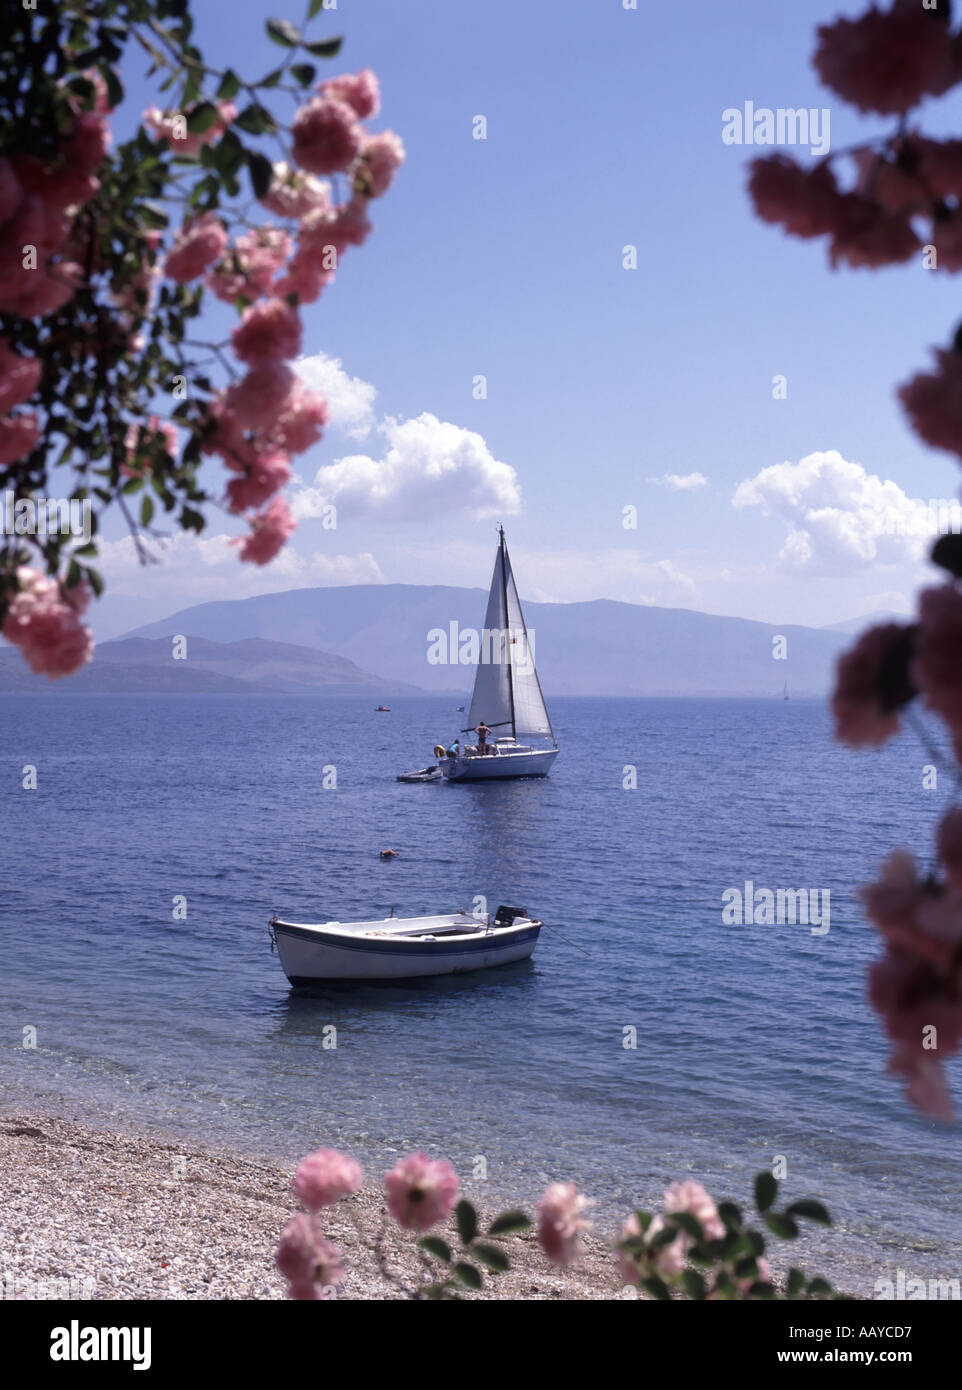 Fleurs roses qui encadrent la baie d'Agni une crique avec une plage de galets et un petit bateau à voile sur la mer Ionienne vue depuis le bord de l'eau Taverna Corfu Island Grèce Banque D'Images